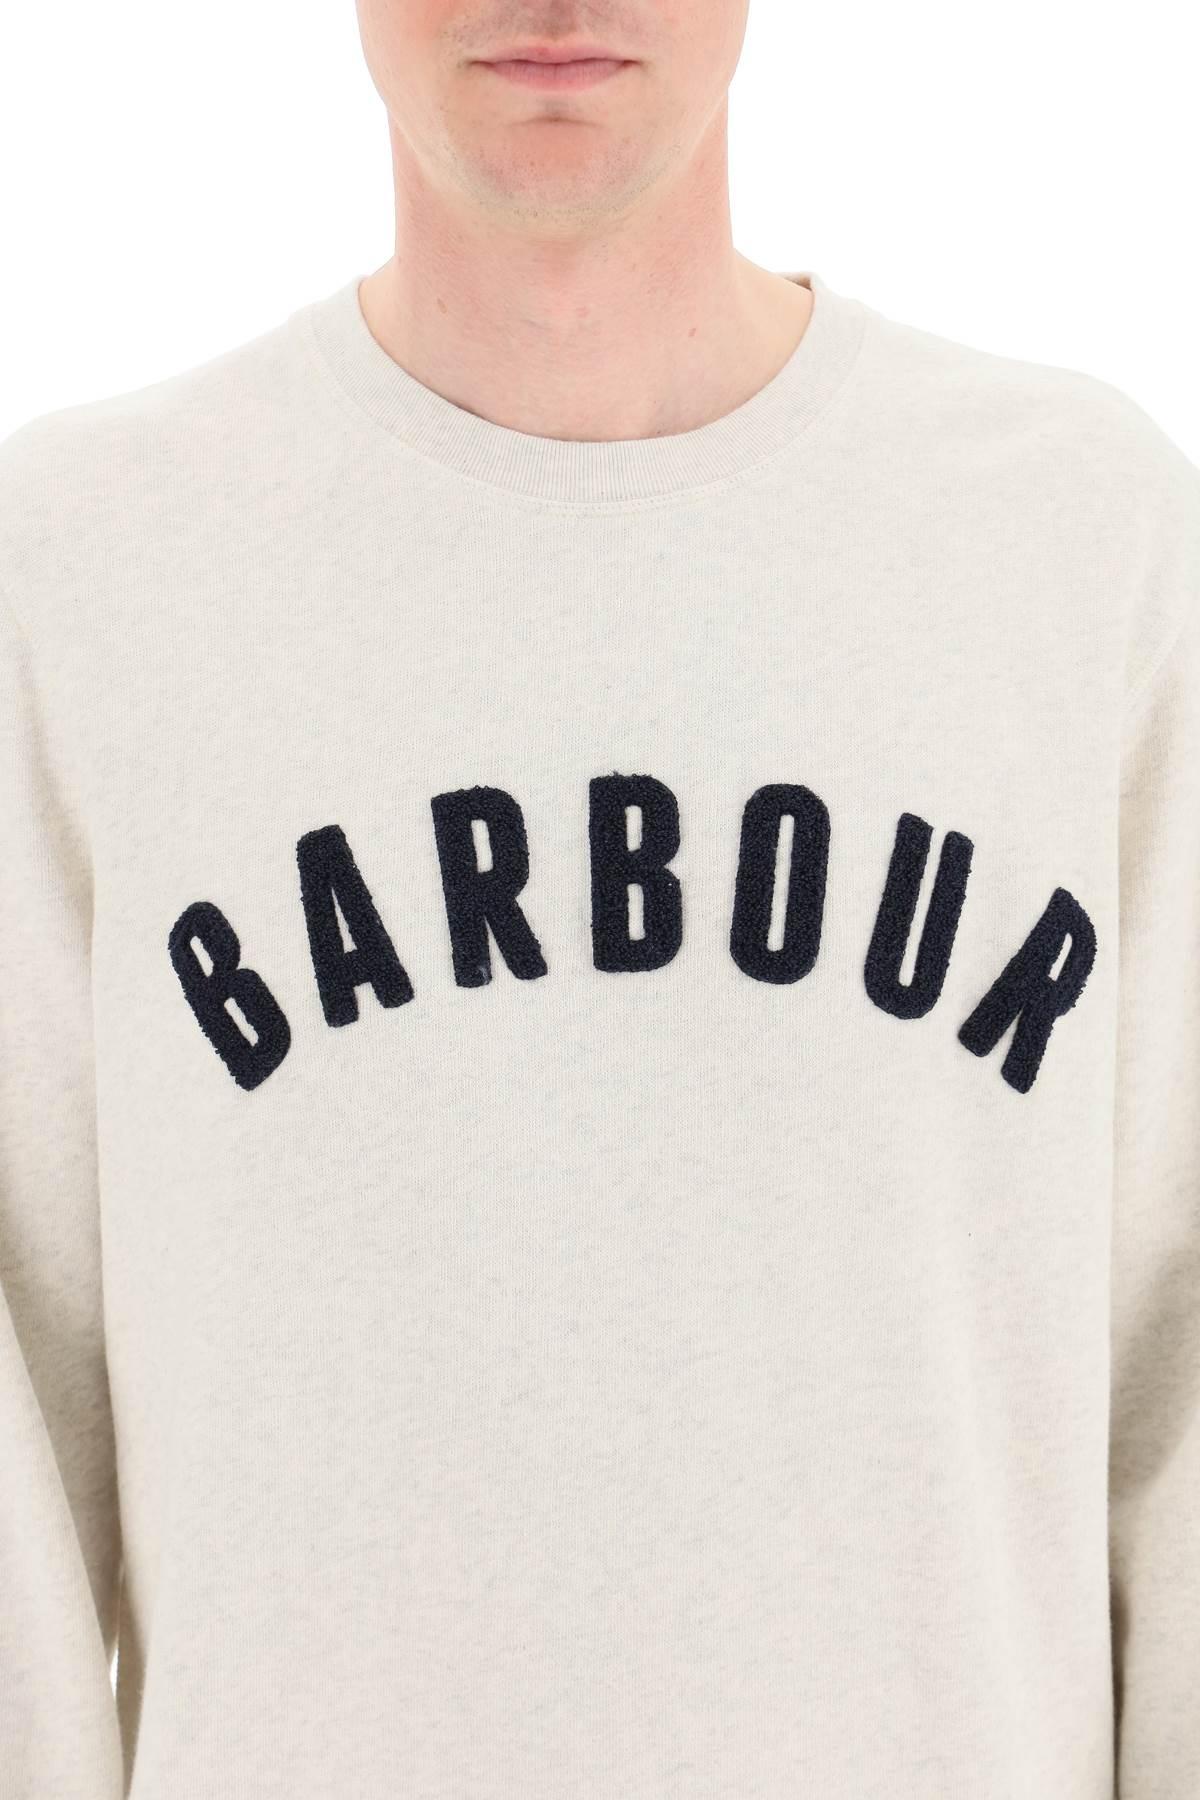 Barbour Cotton Logo Sweatshirt for Men - Save 5% | Lyst